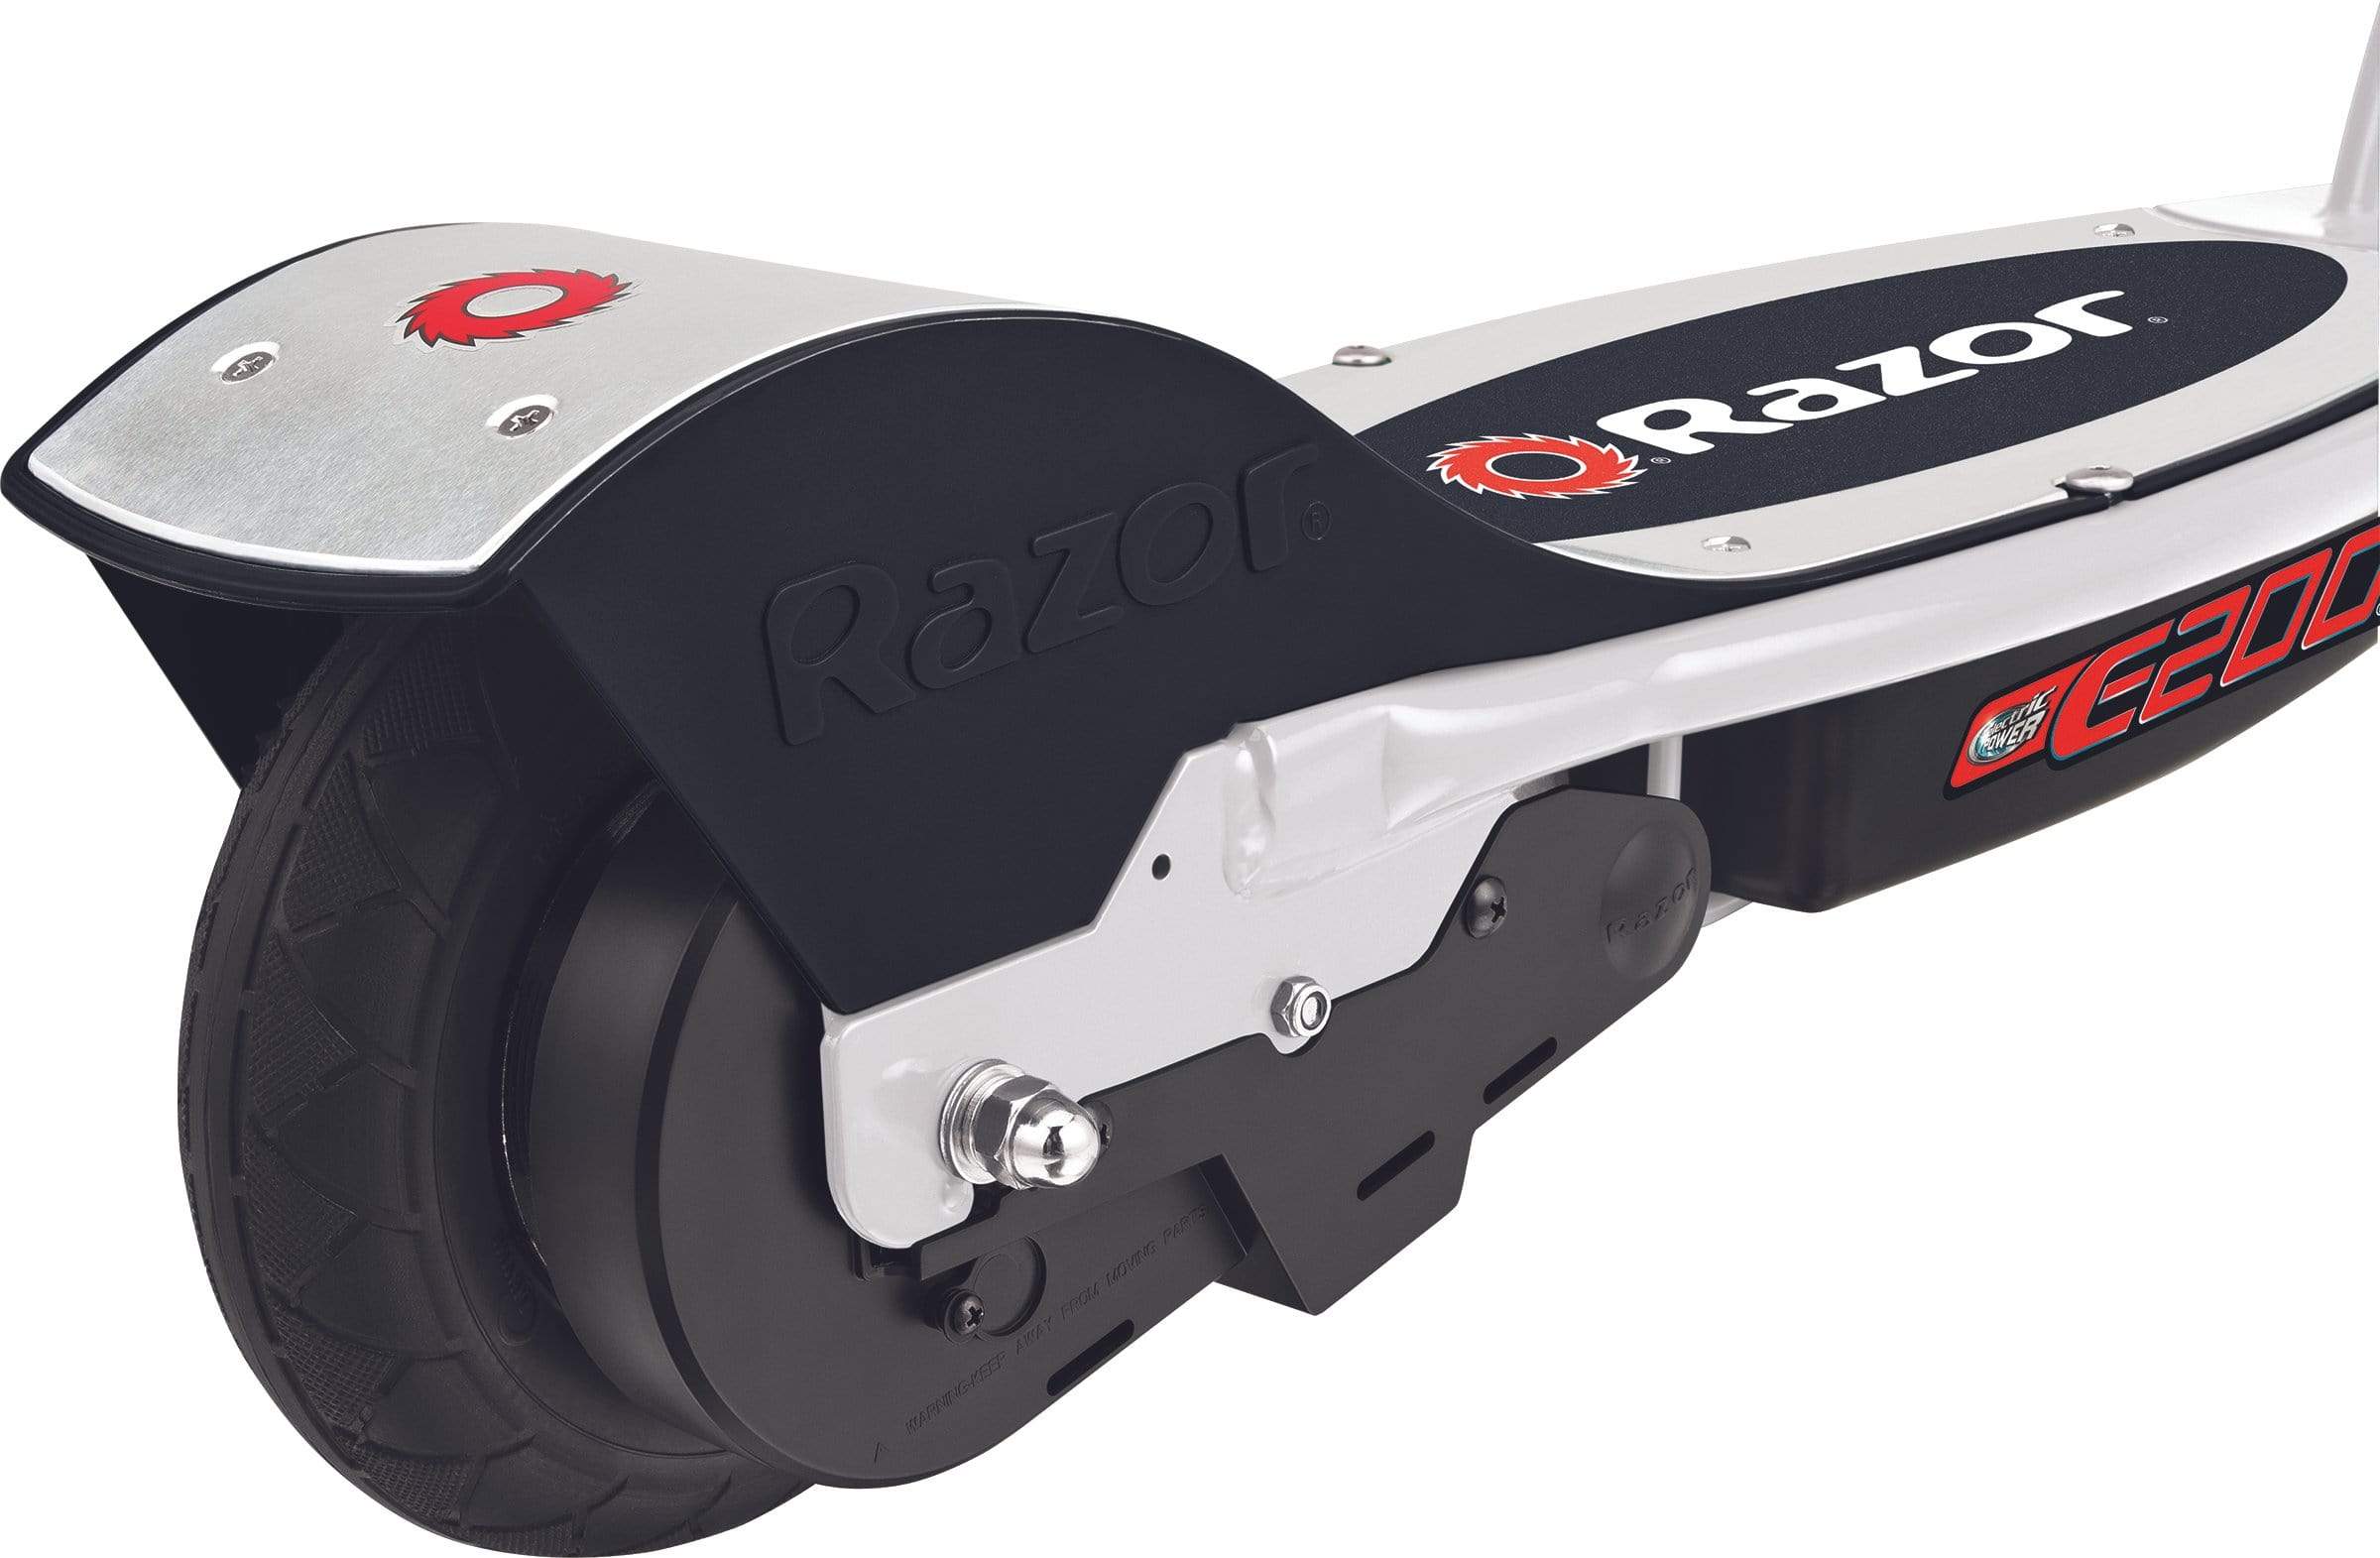 Razor Electric Scooter White/Red Razor E200 Electric Scooter - White/Red